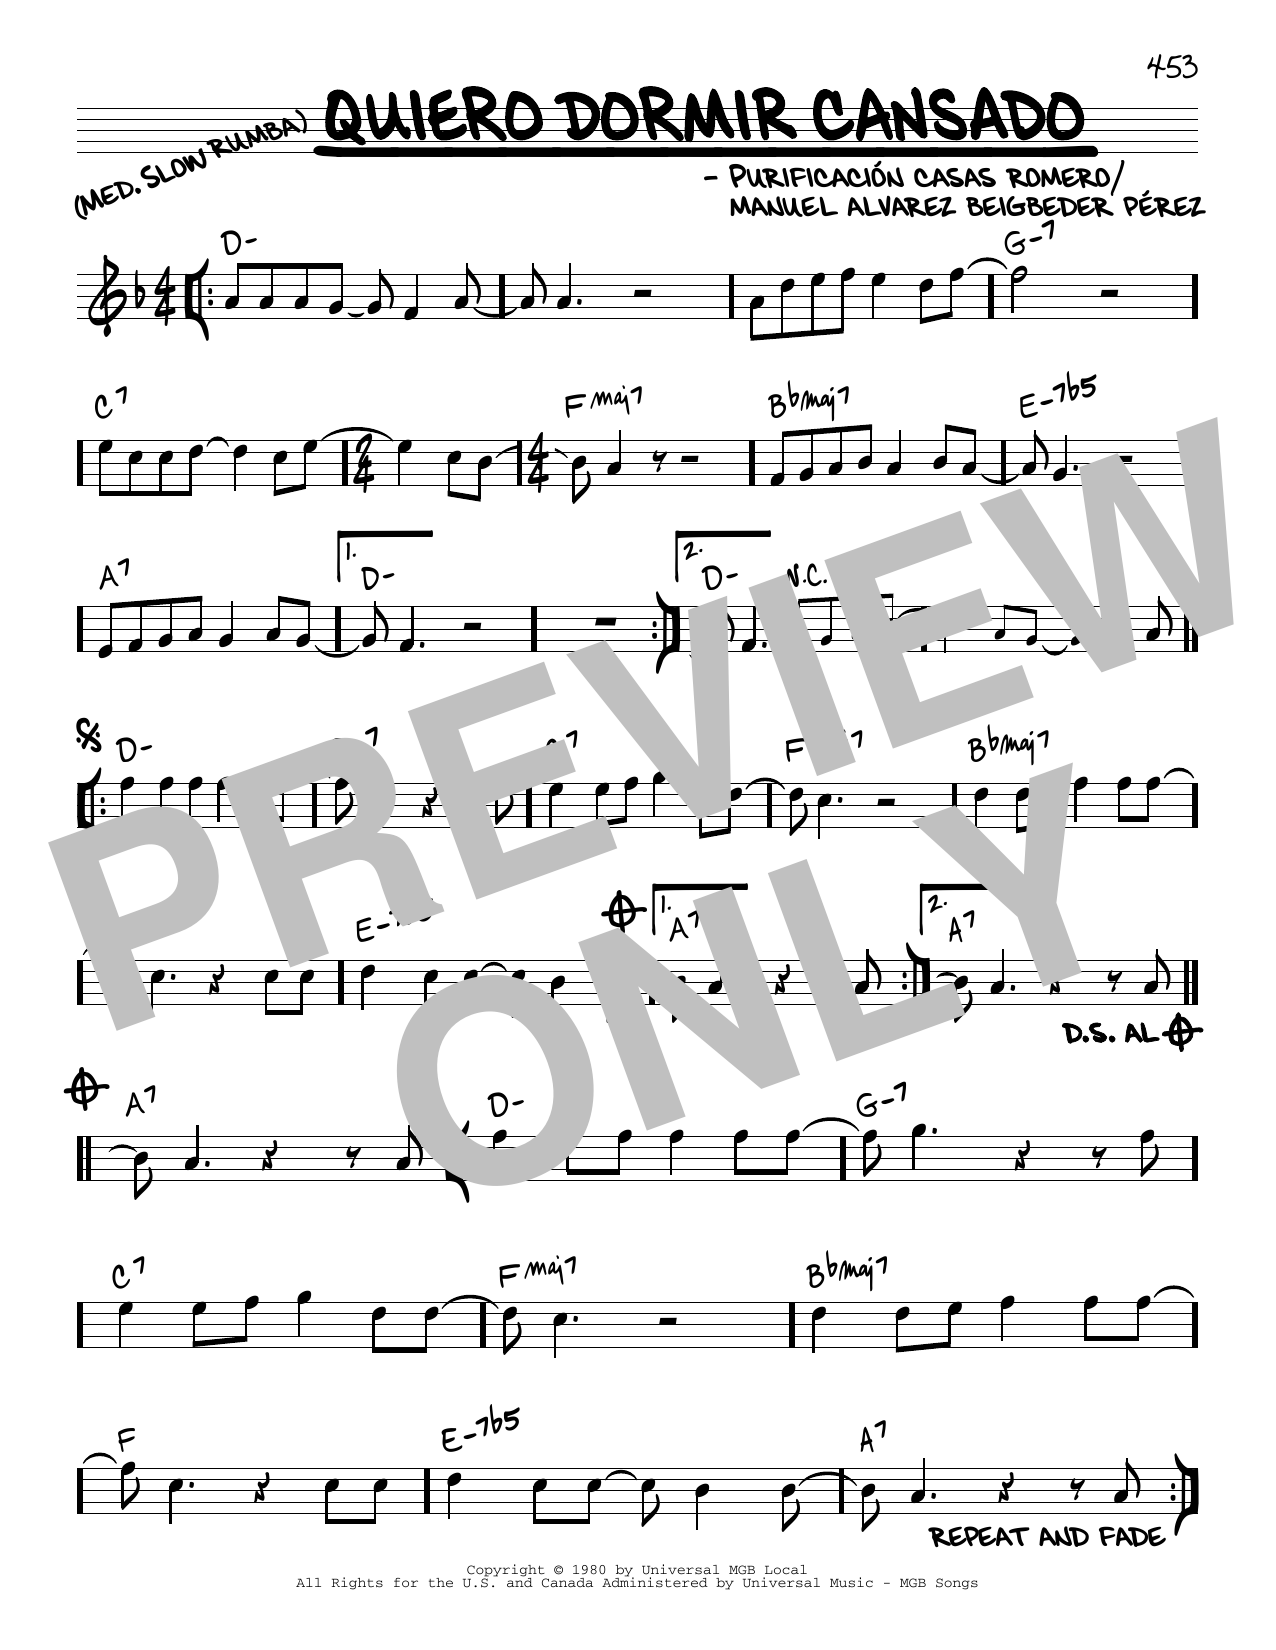 Purificación Casas Romero Quiero Dormir Cansado Sheet Music Notes & Chords for Real Book – Melody & Chords - Download or Print PDF